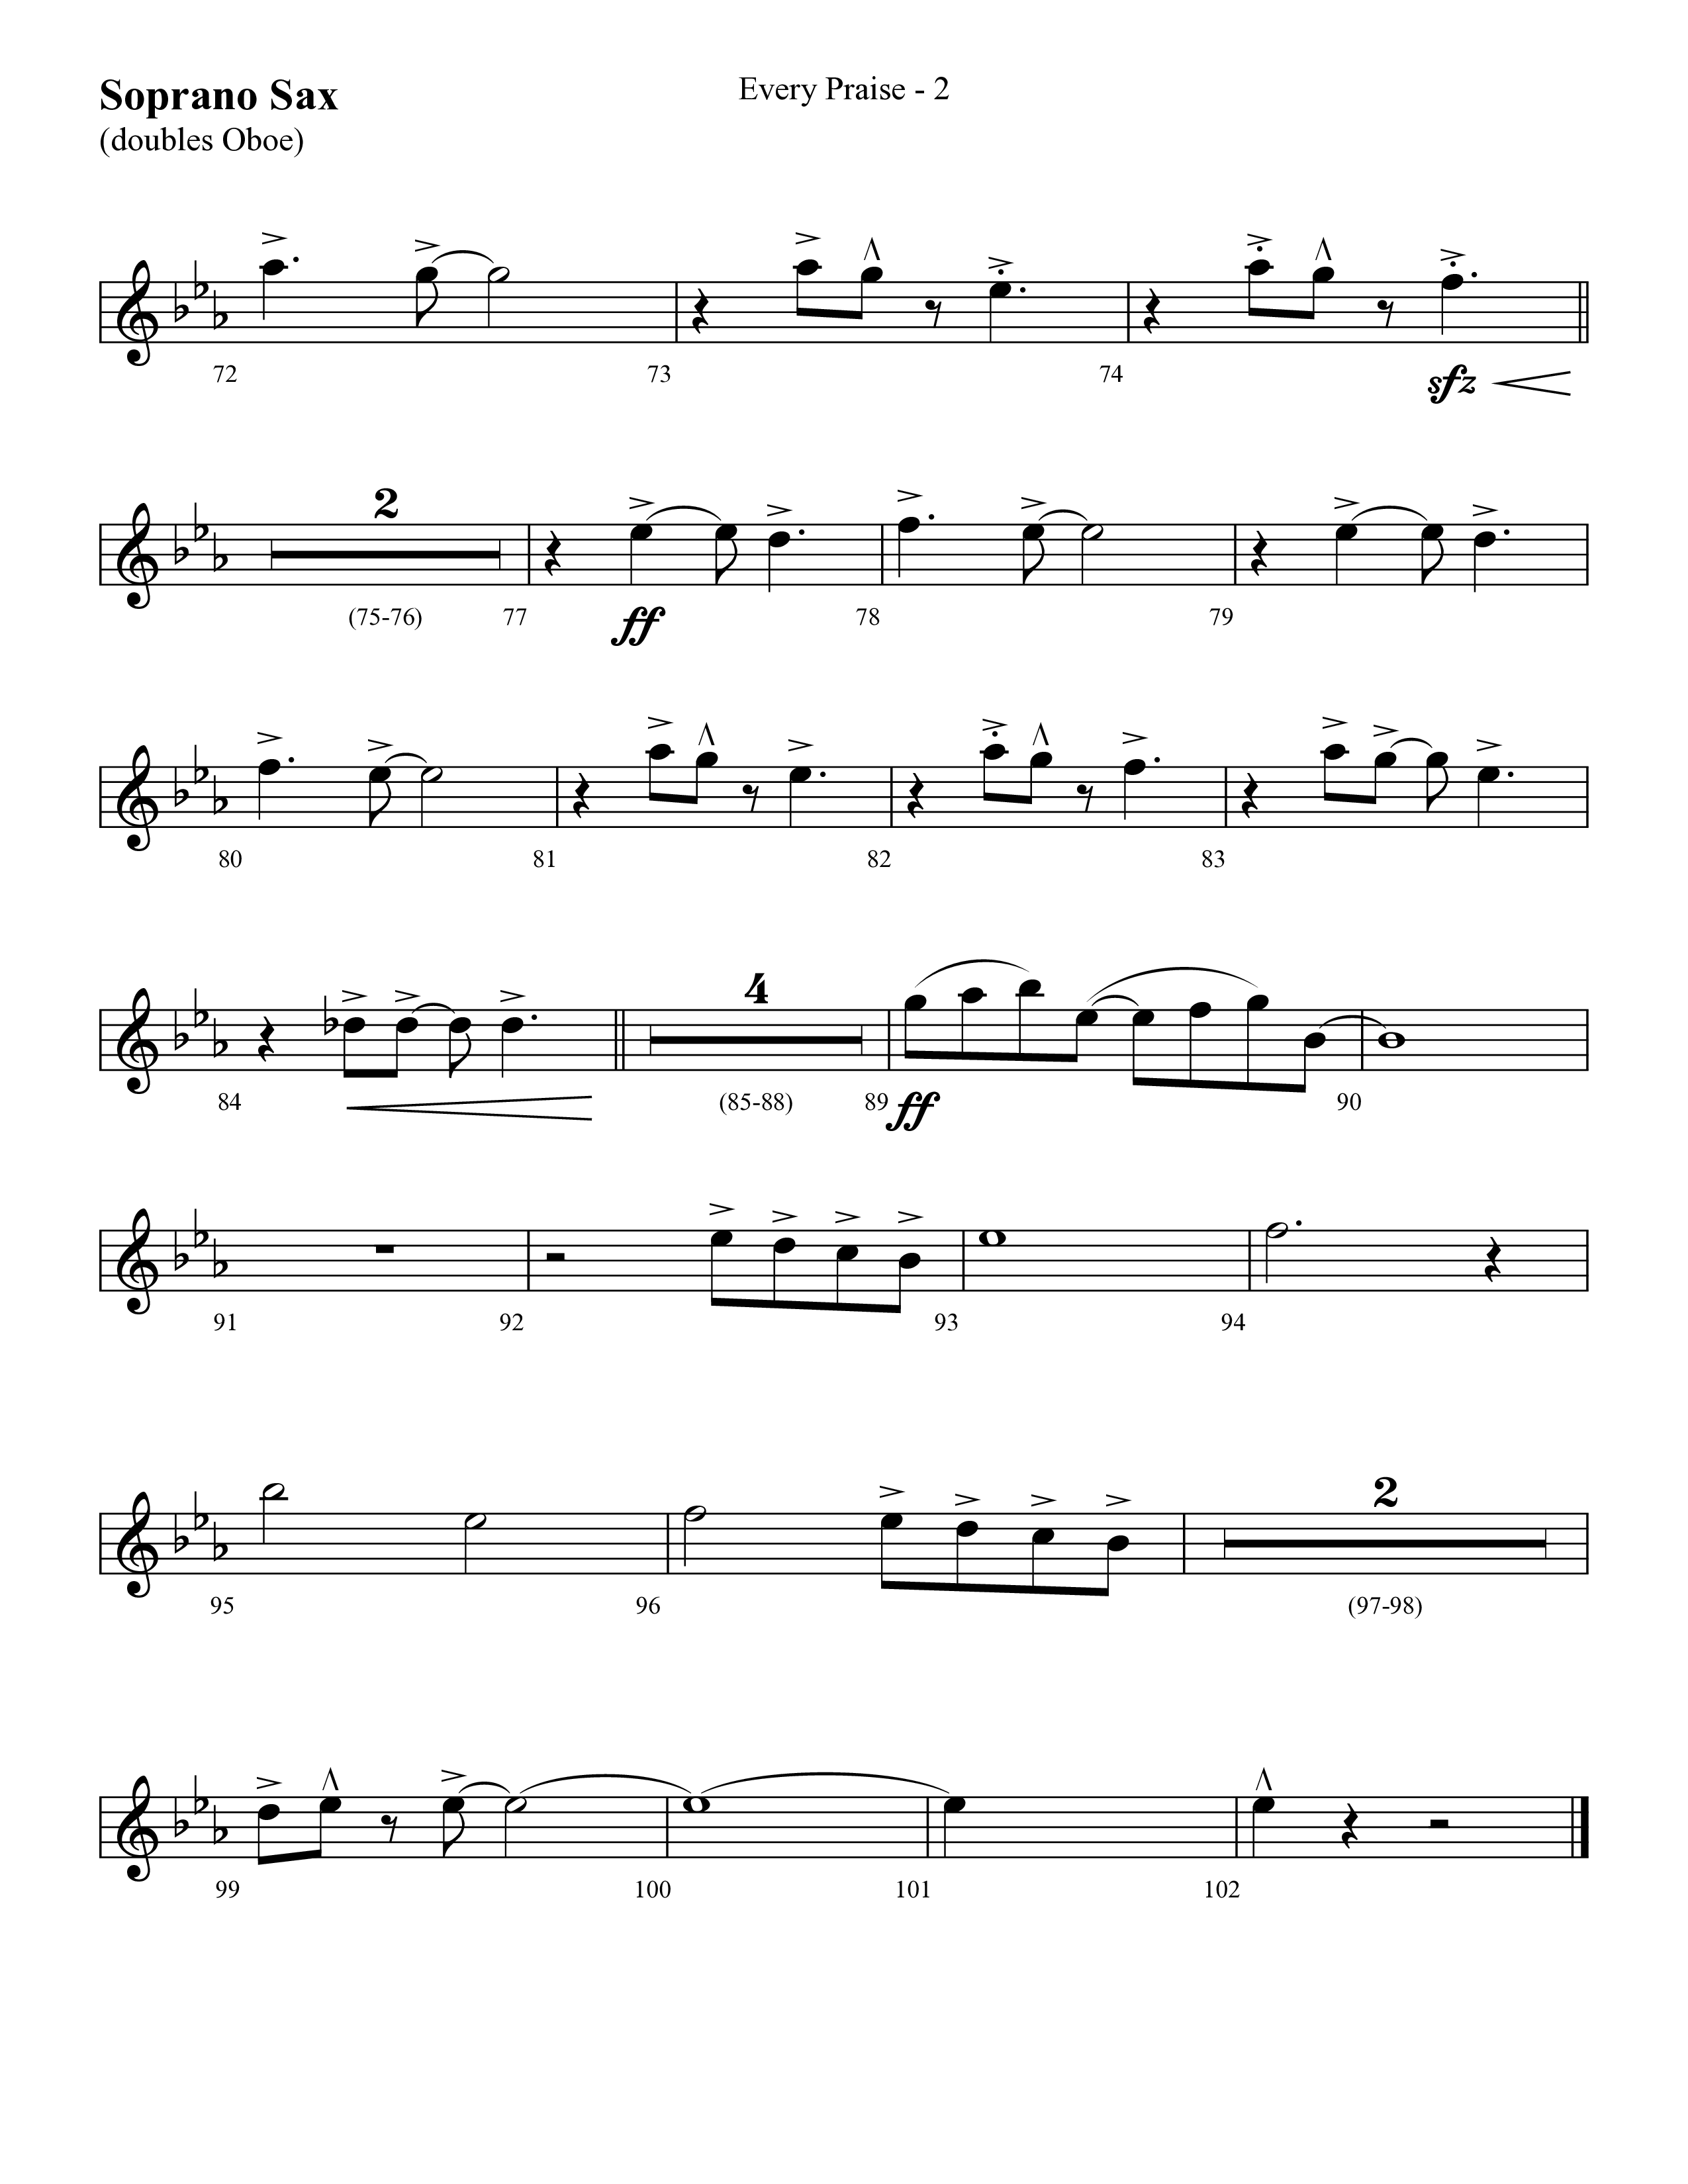 Every Praise (Choral Anthem SATB) Soprano Sax (Lifeway Choral / Arr. Cliff Duren)